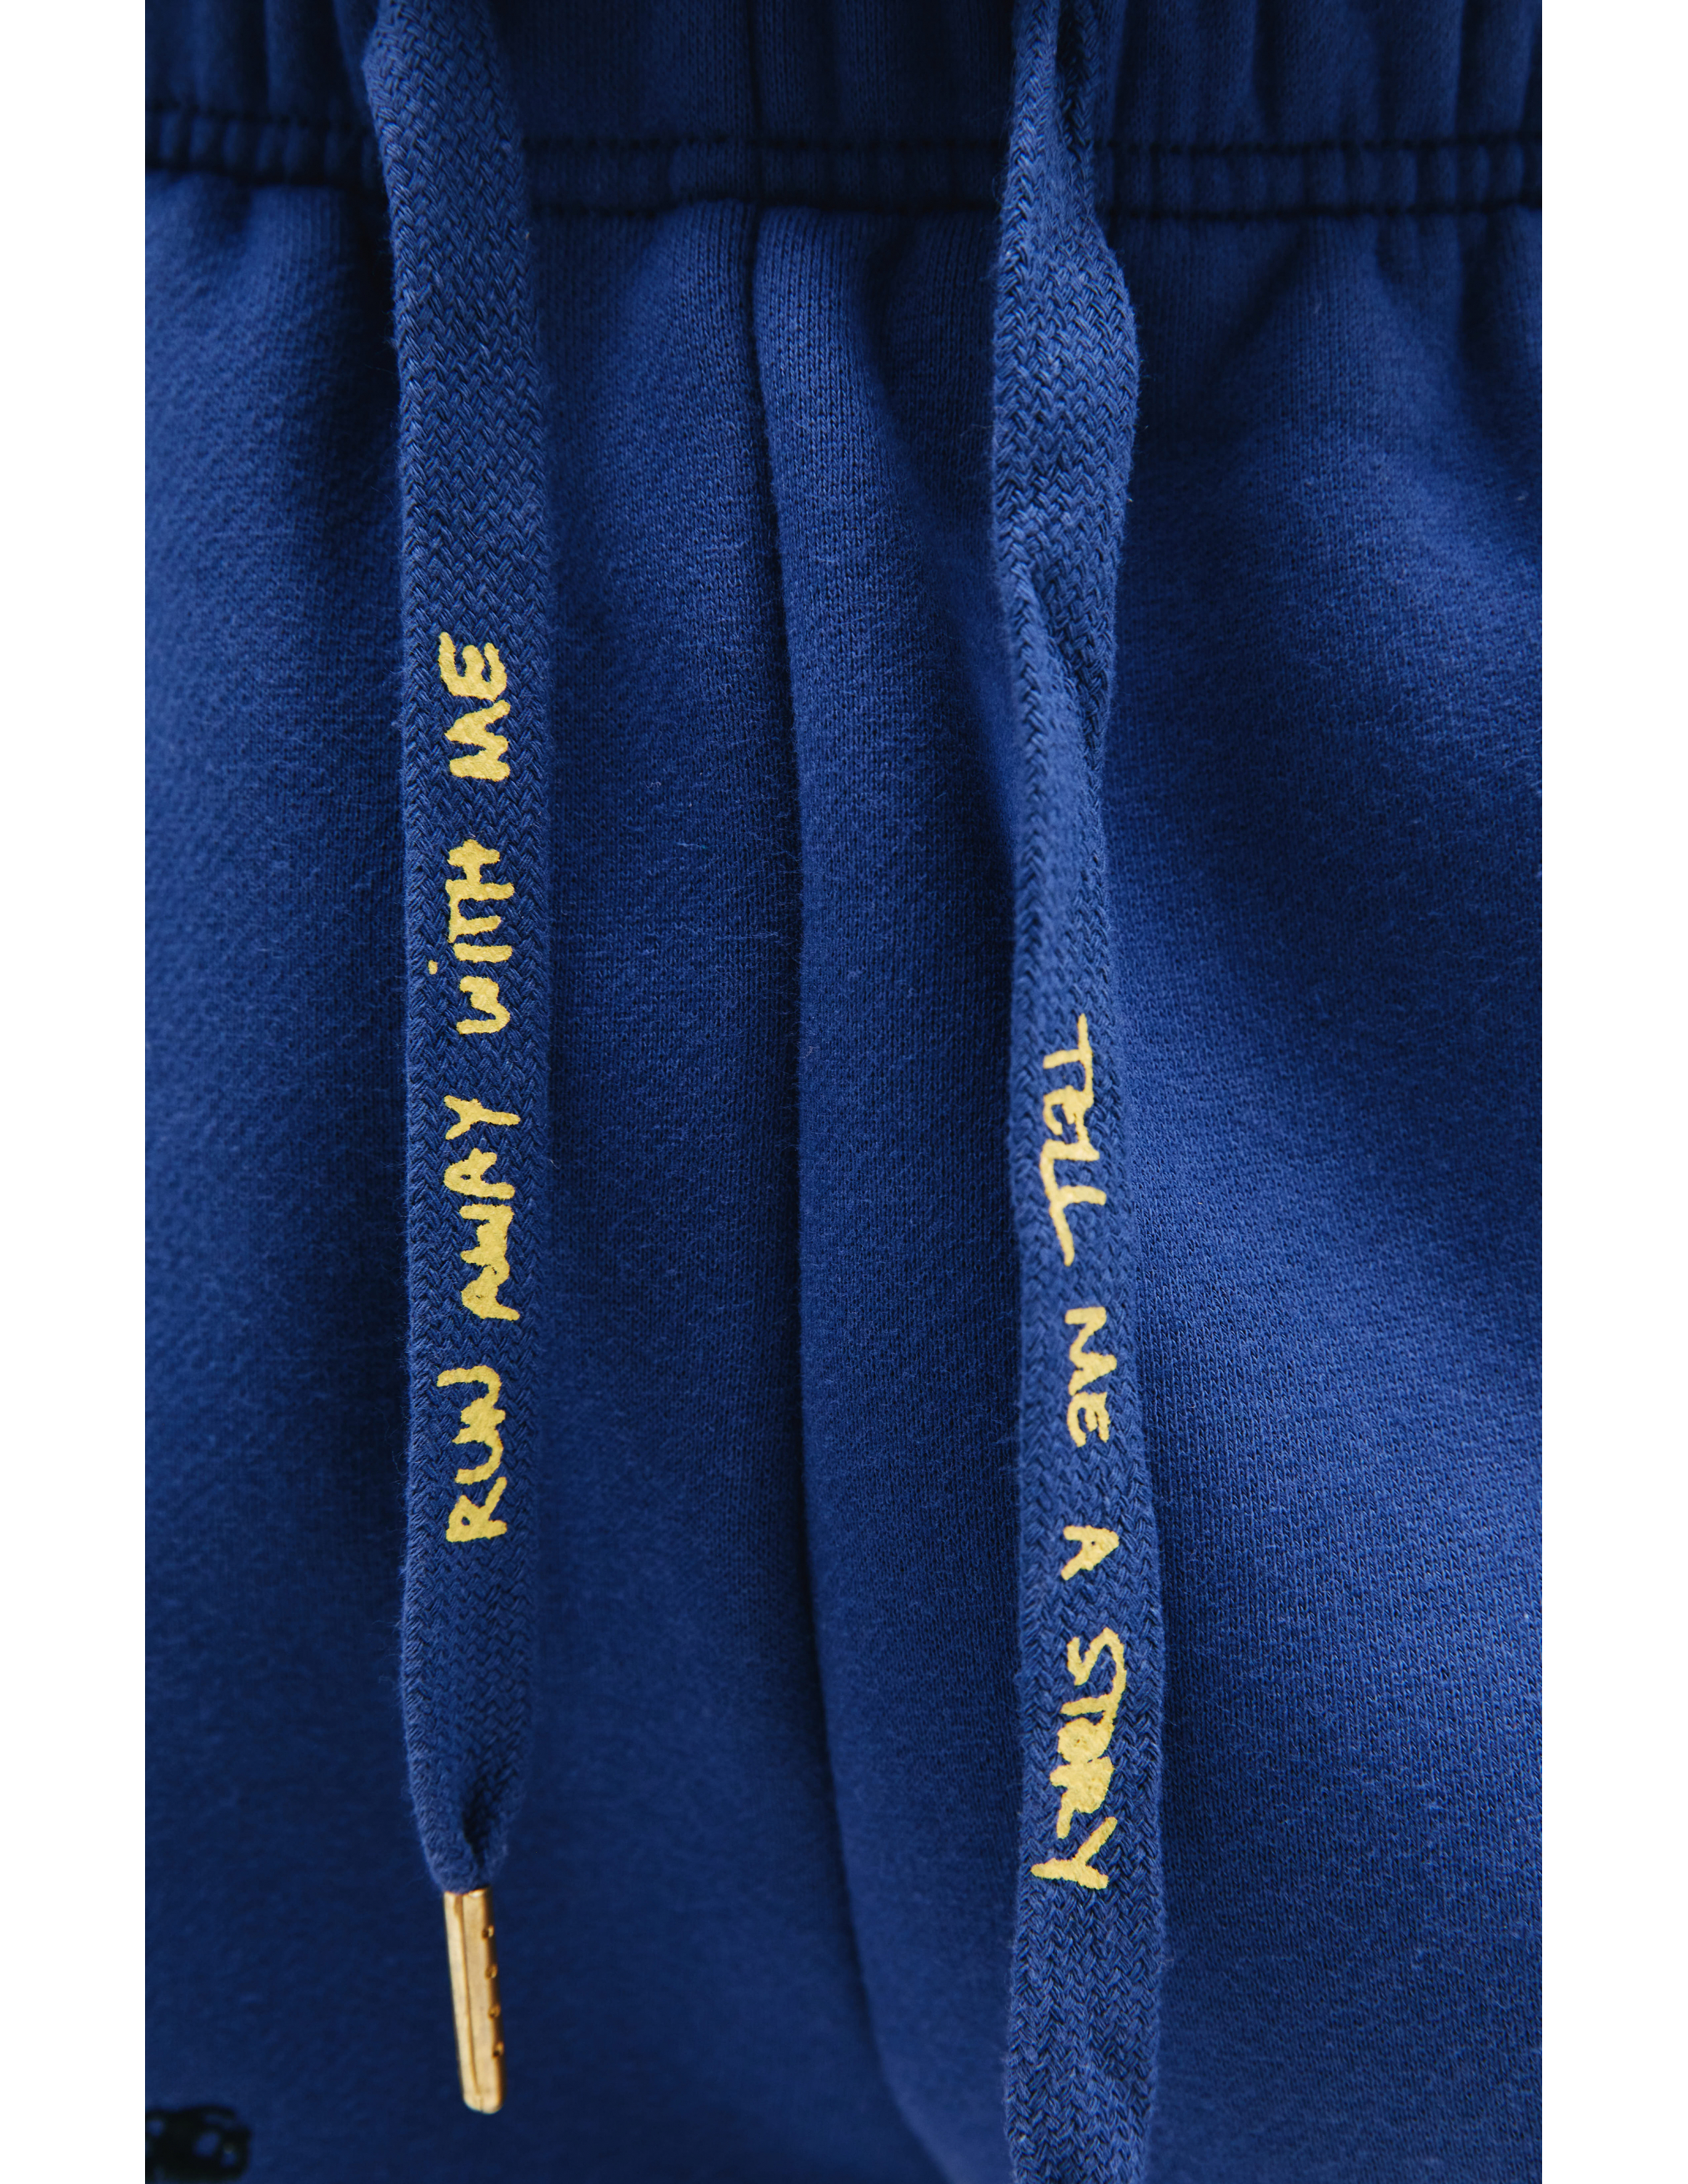 Синие брюки с вышивками KidSuper KSPF03/11, размер XXL;M;L KSPF03/11 - фото 4